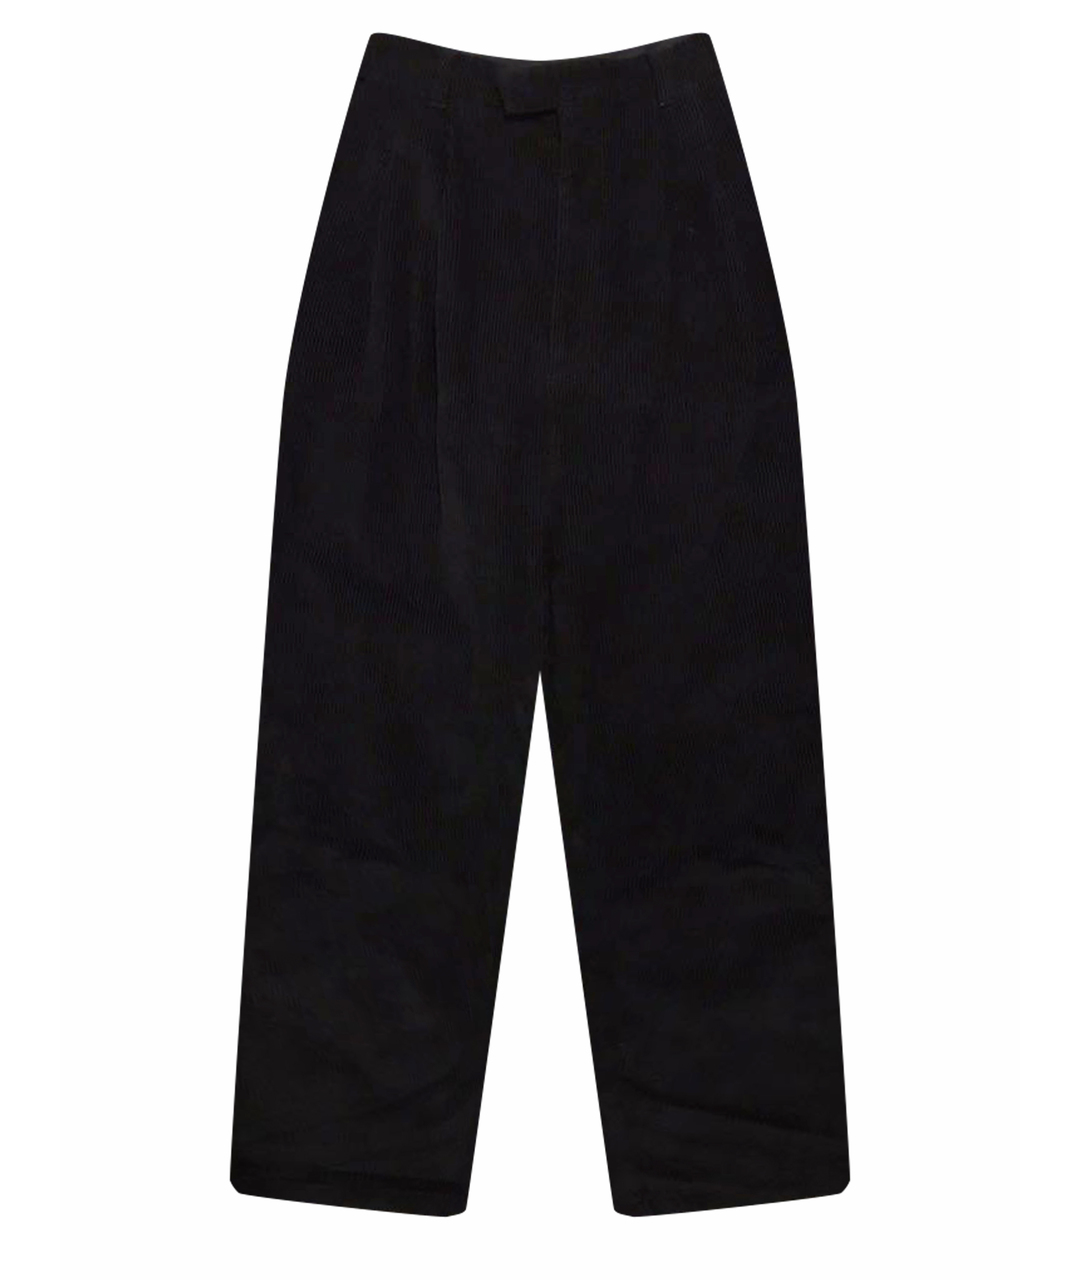 Perks and Mini Черные хлопковые прямые брюки, фото 1